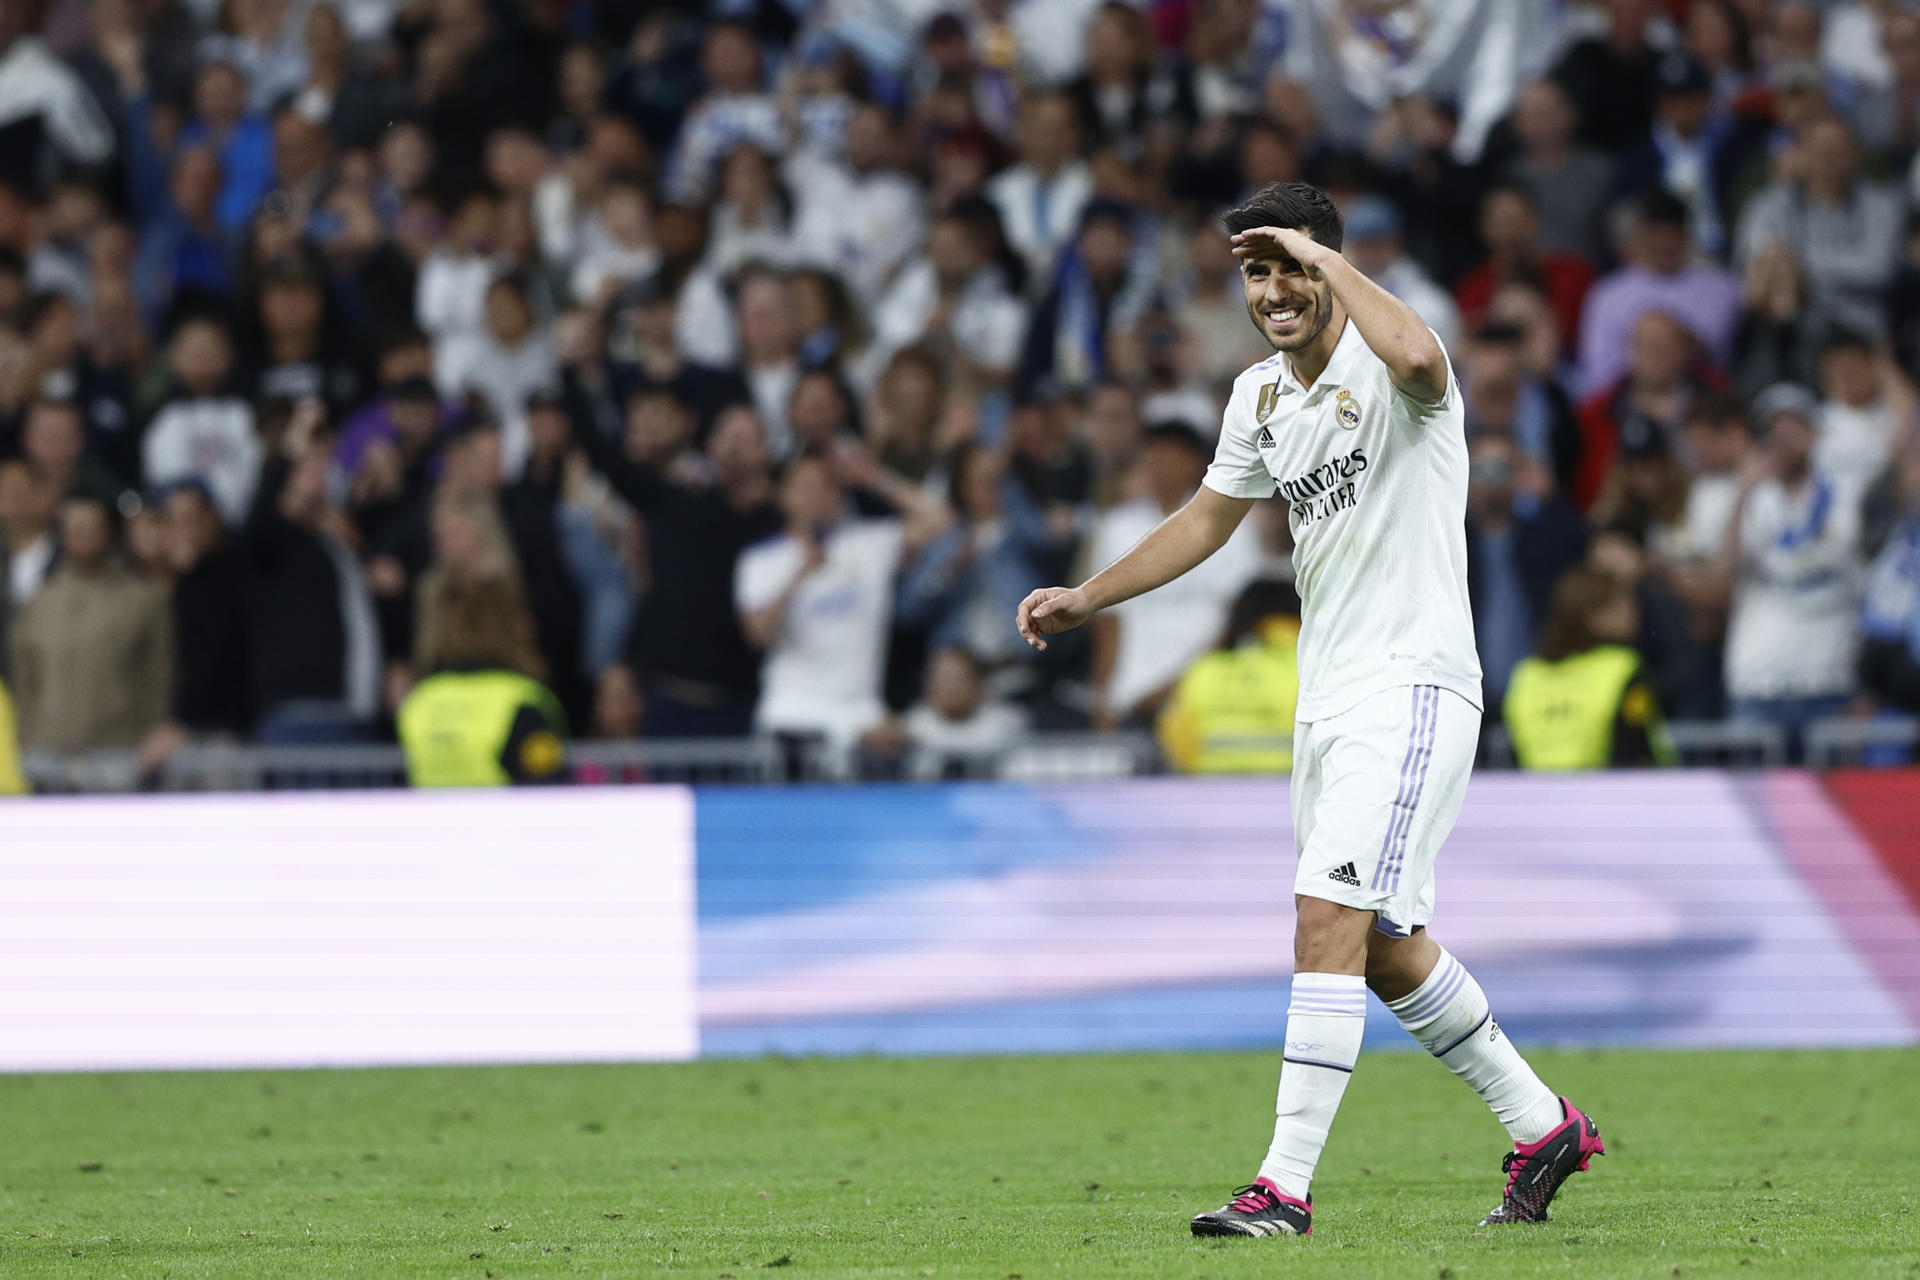 El futbolista Real Madrid Marco Asensio celebra un gol, en una foto de archivo. EFE/Rodrigo Jiménez